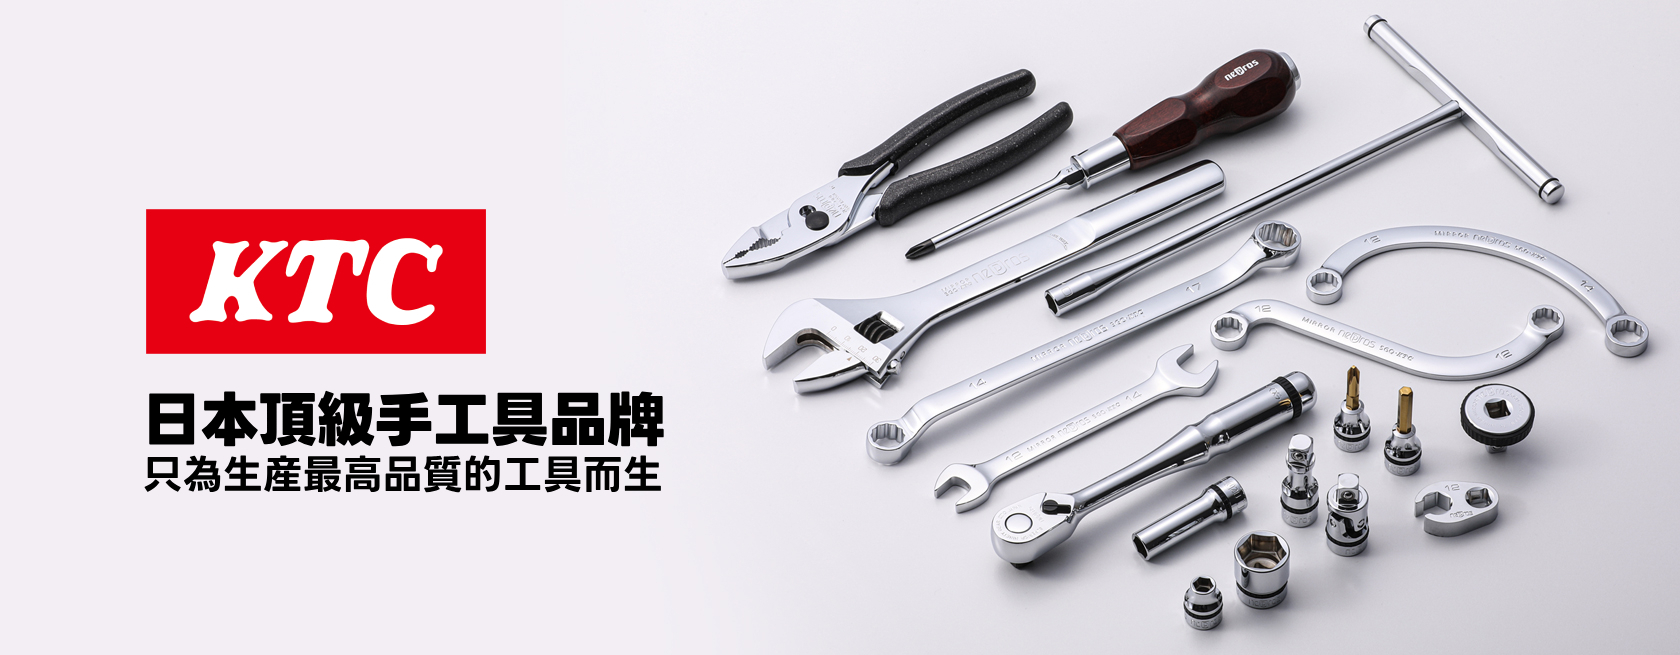 日本KTC 頂級規格手工具-台灣代理商(德貿)